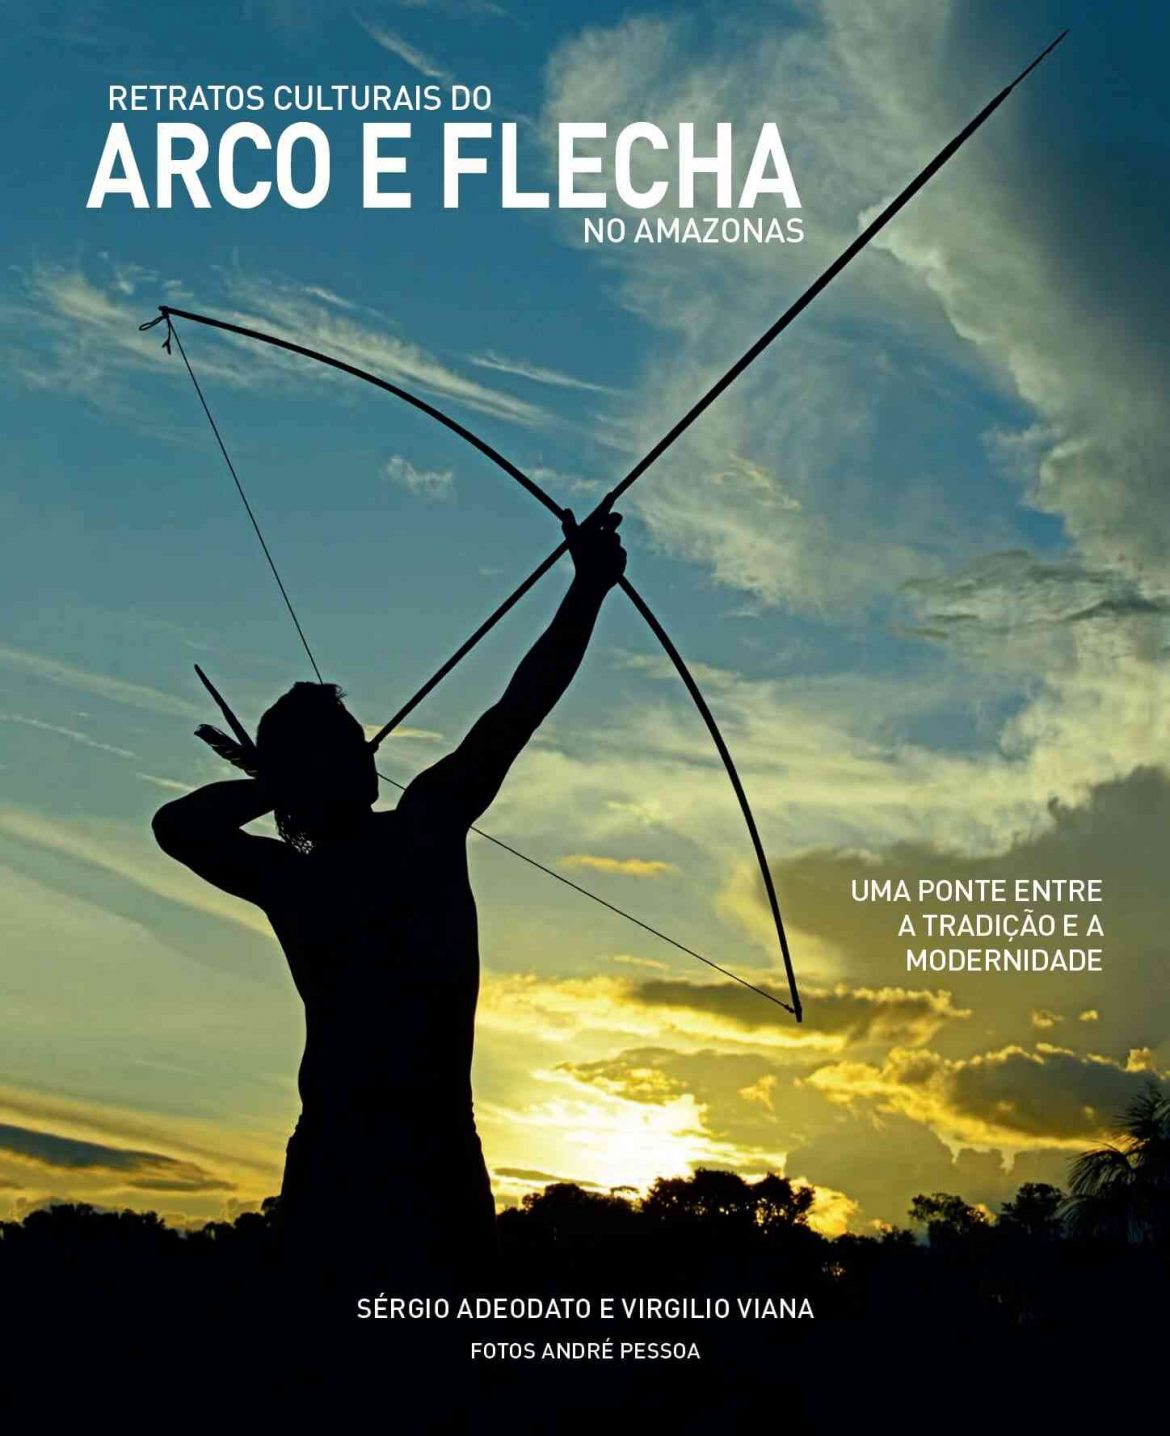 Capa de livro intitulado "Retratos Culturais do Arco e Flecha no Amazonas" escrito por Sérgio Adeodato e pelo superintendente geral da Fundação Amazônia Sustentável (FAS), Virgilio Viana.